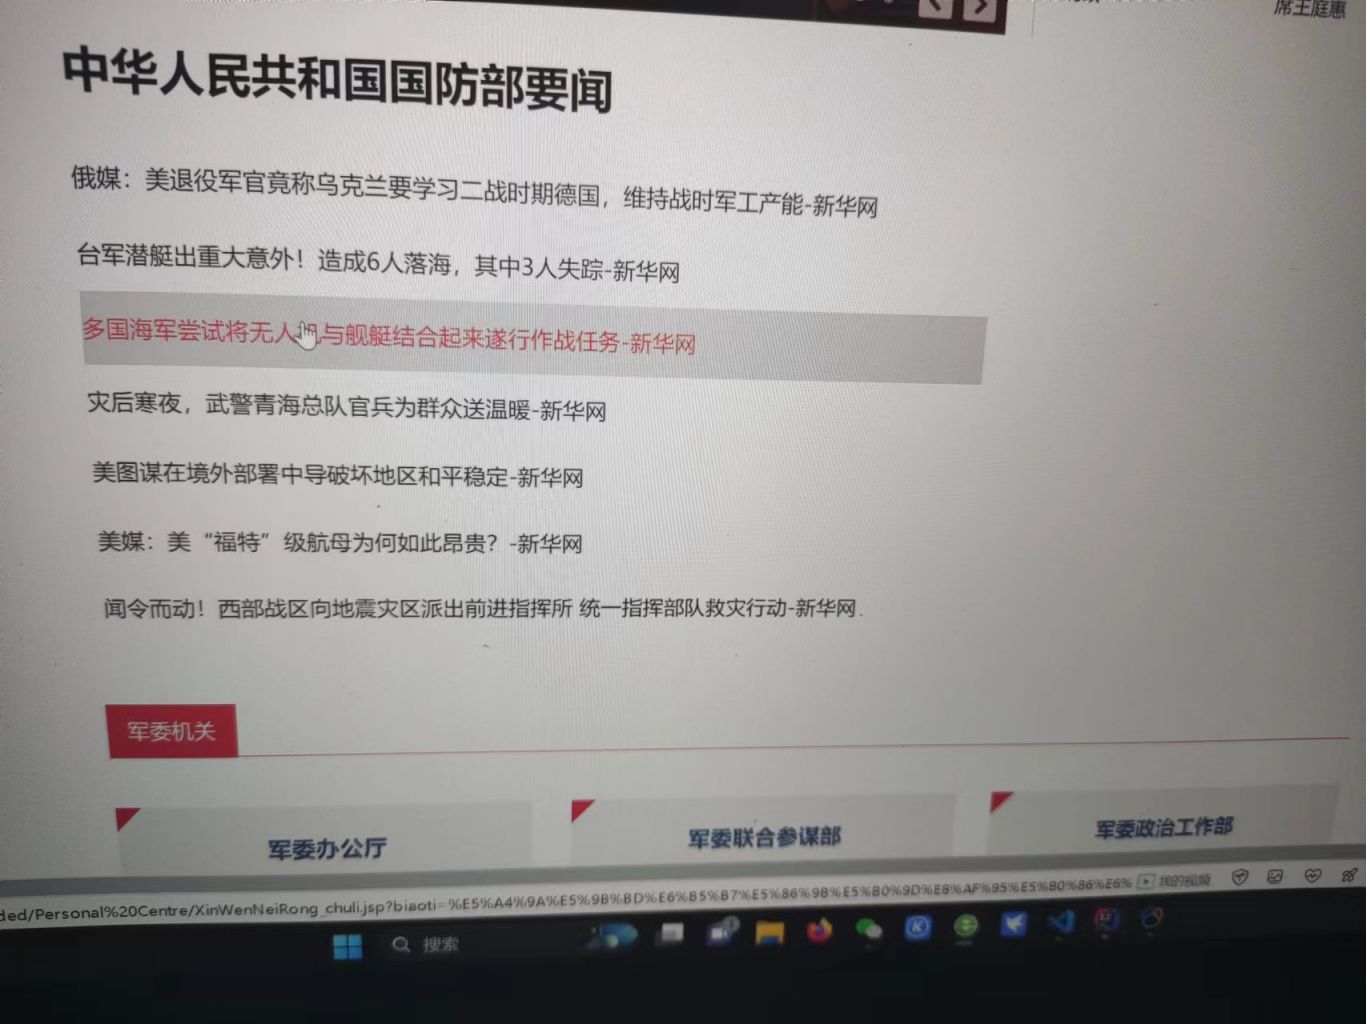 模仿人人网注册和中国国防网静态页